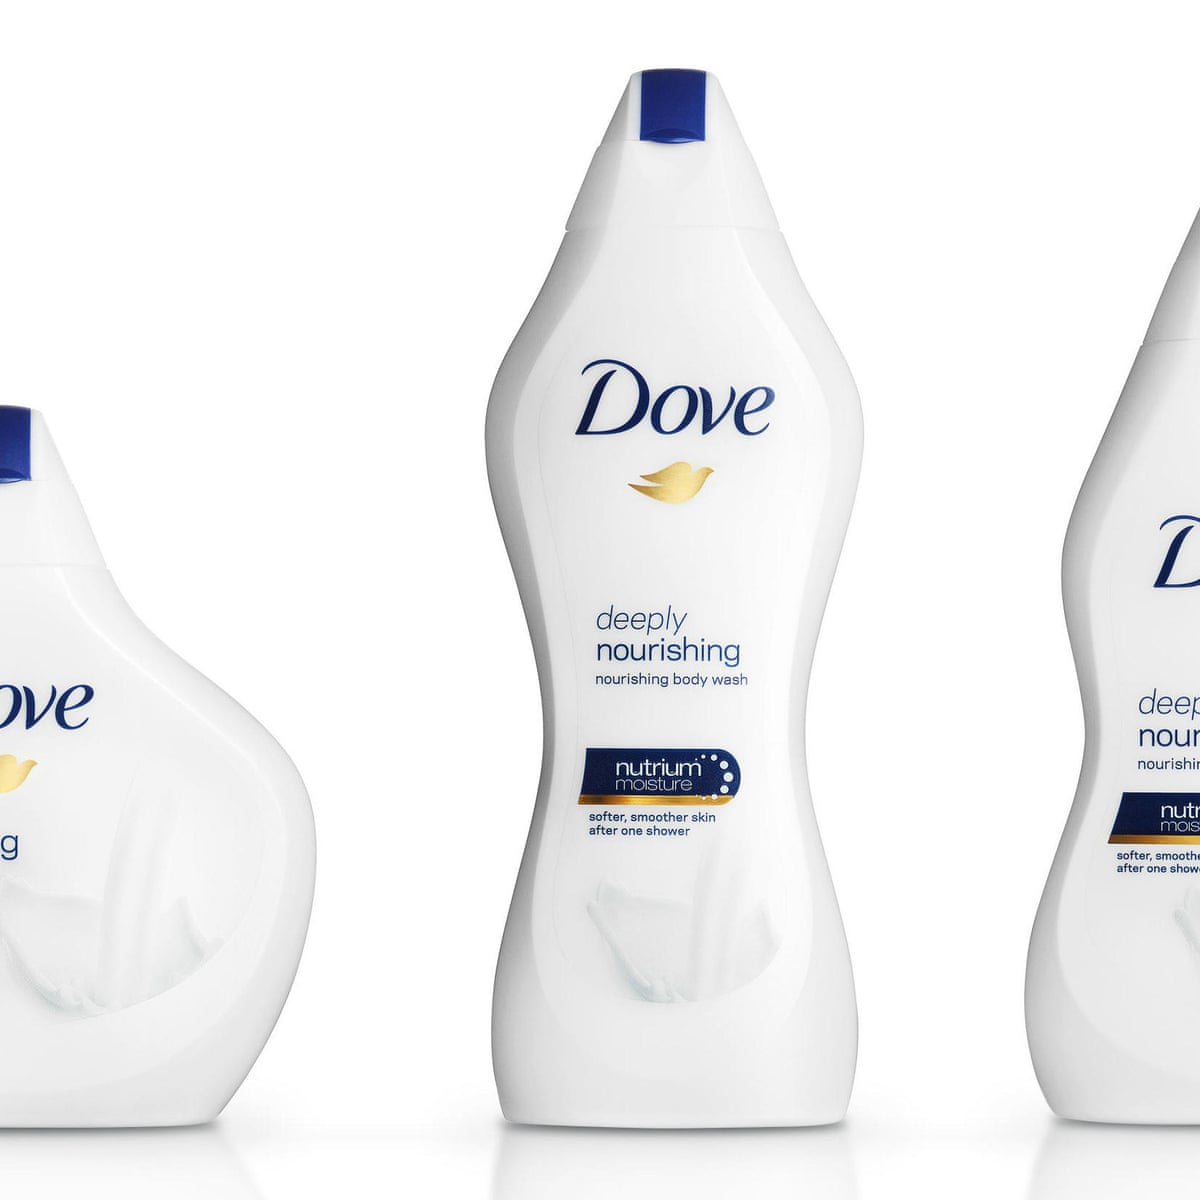 history of dove shampoo